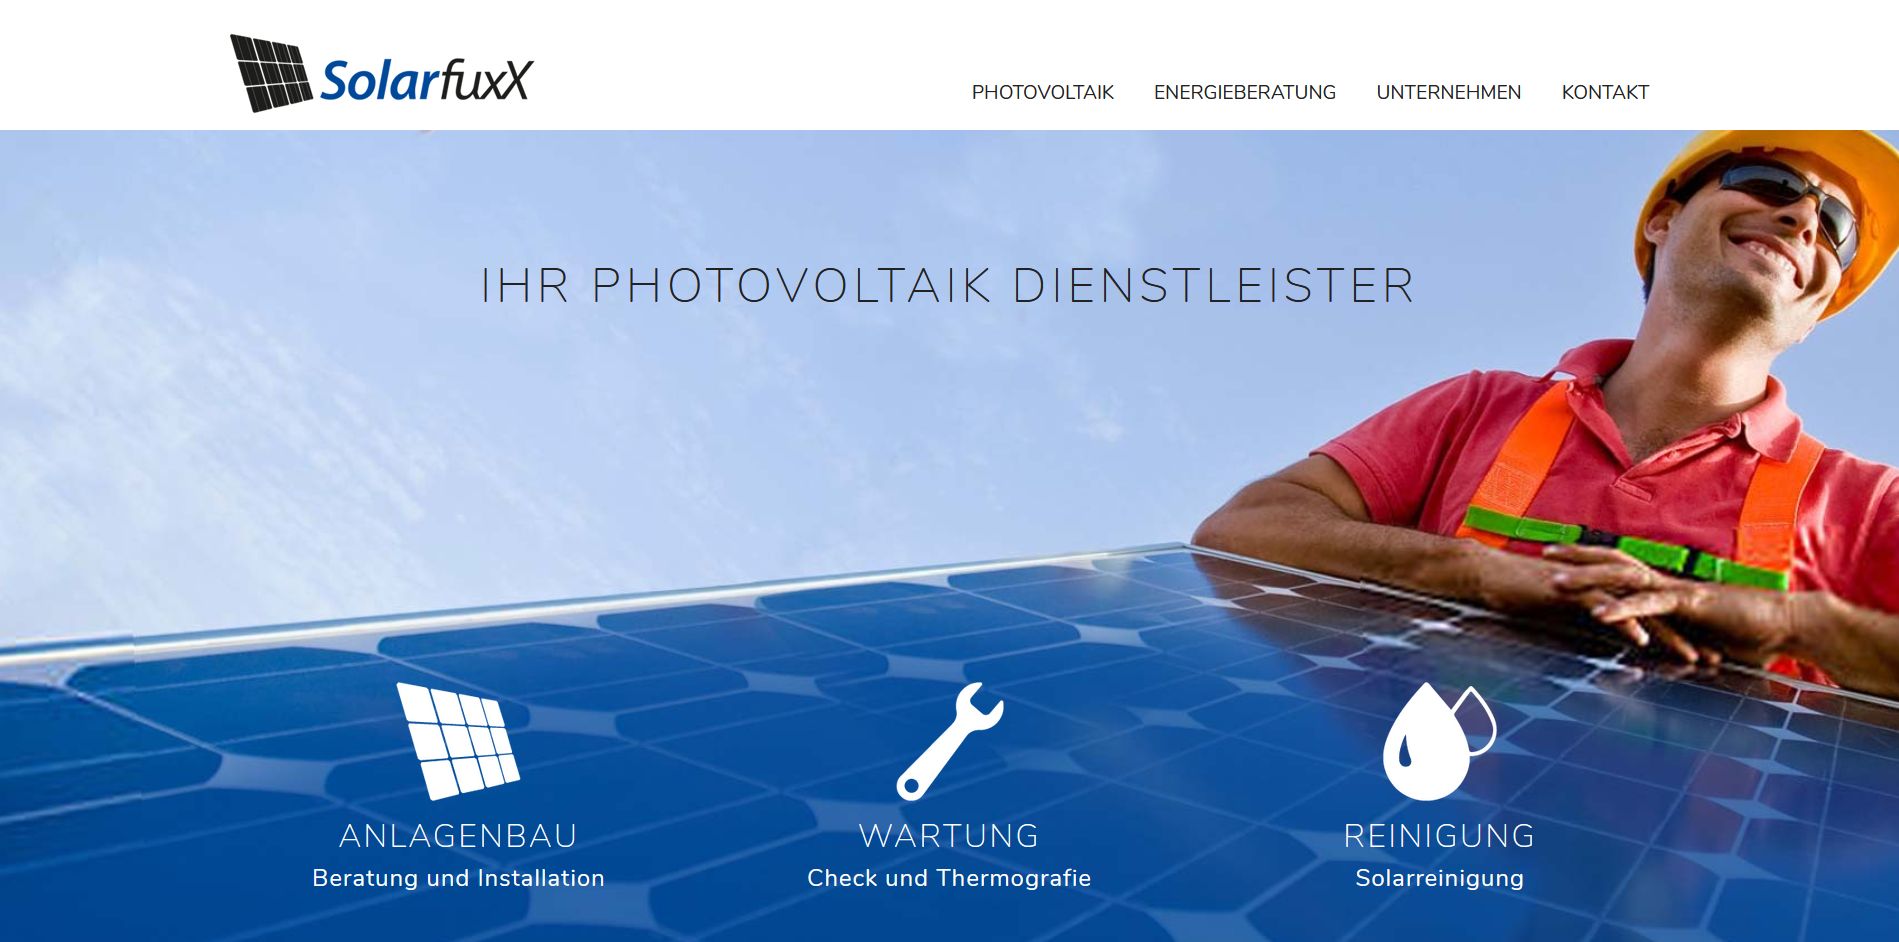 Webtexte SolarfuxX